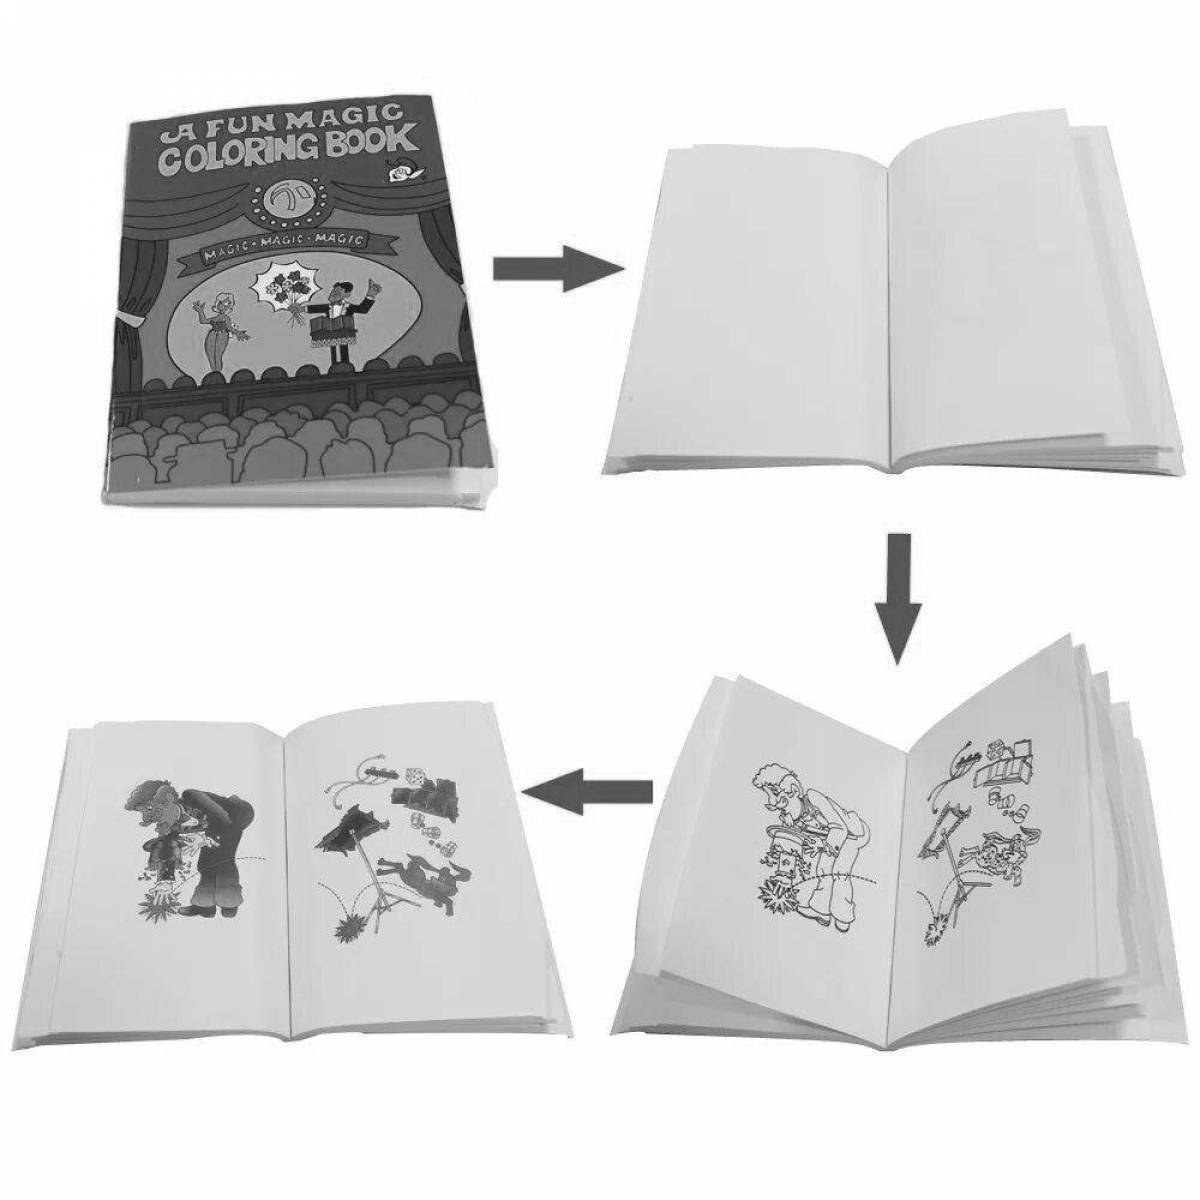 A wonderful coloring book magic book